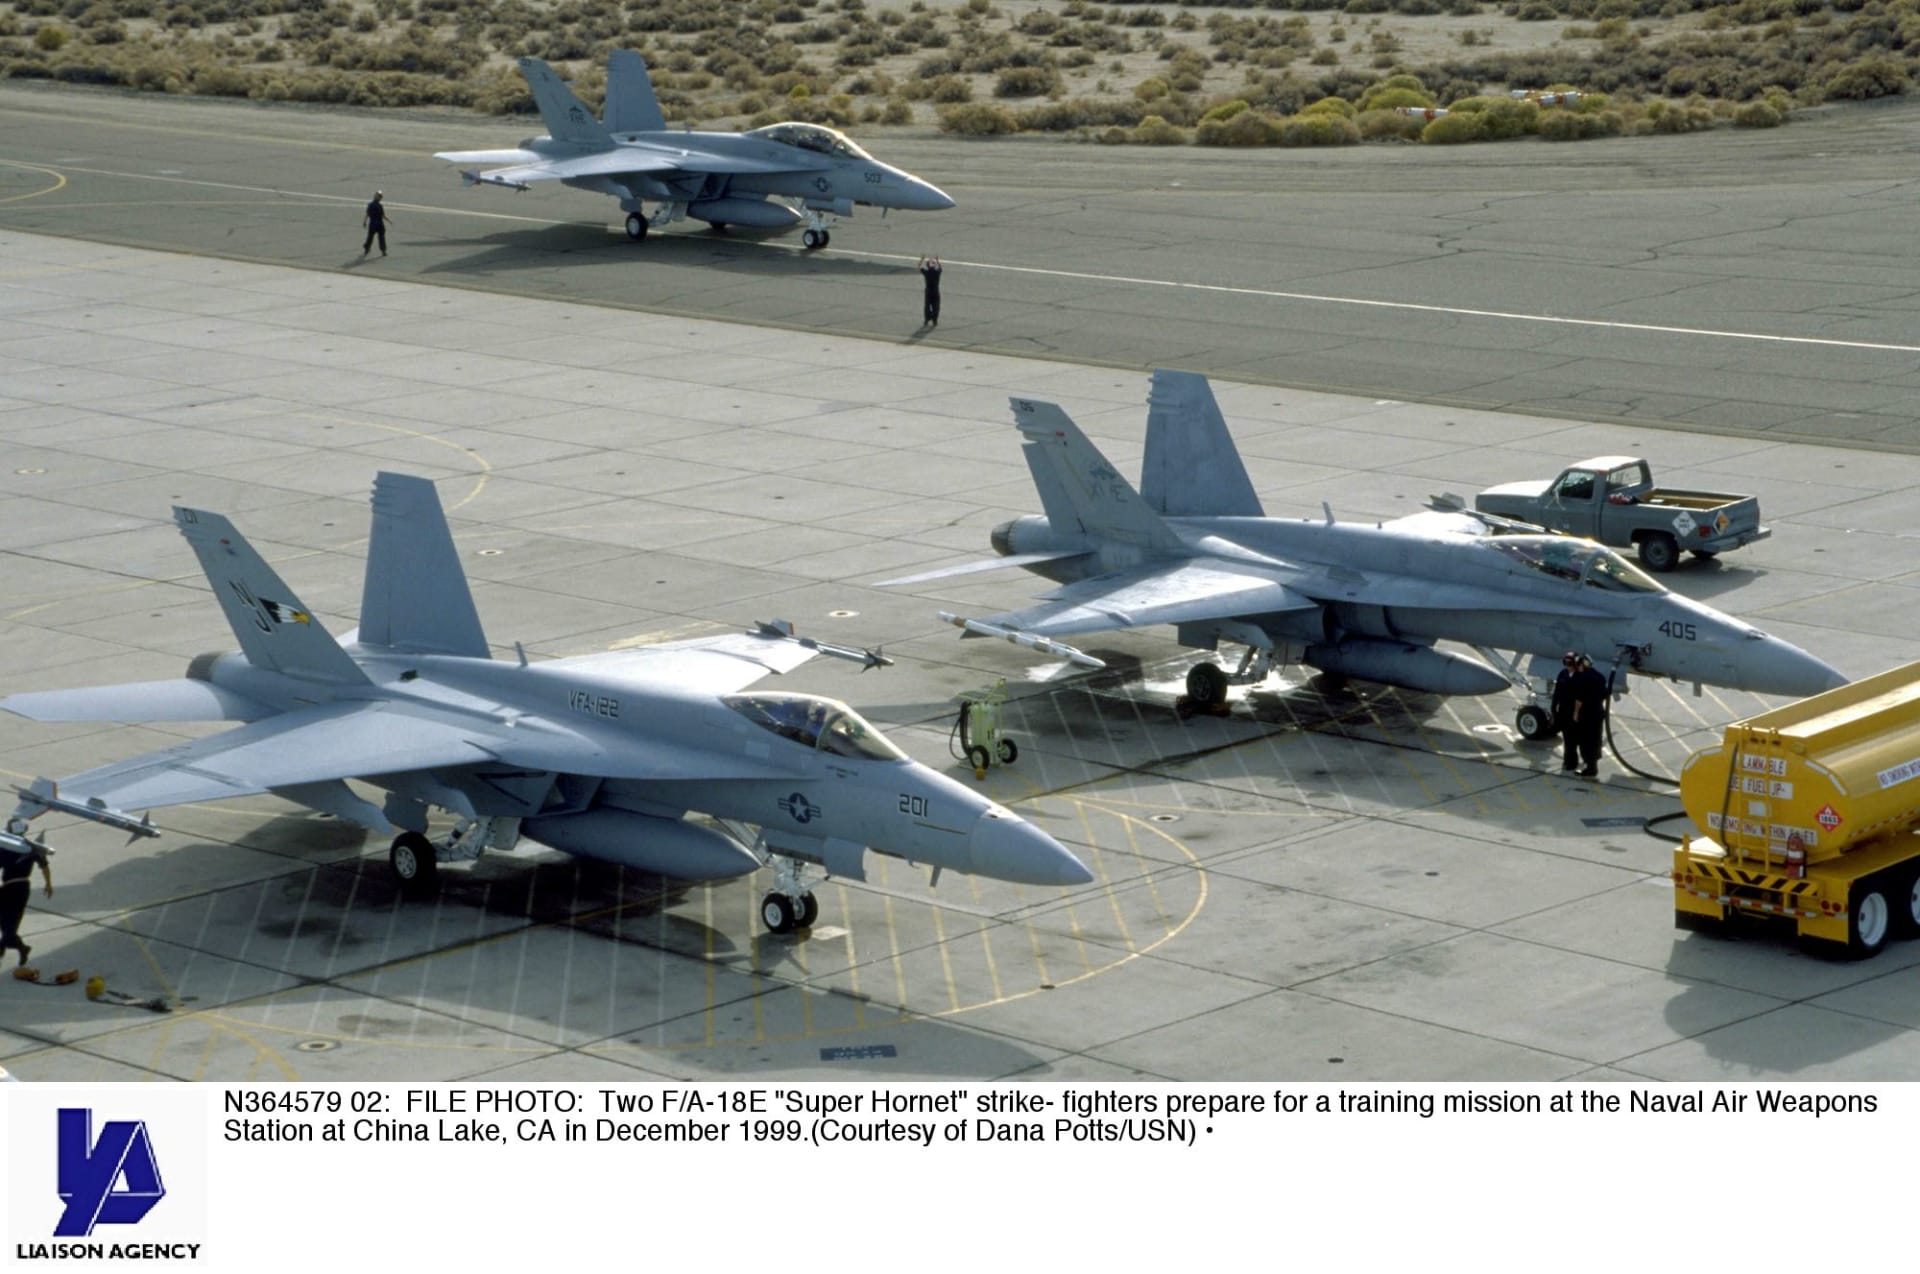 الخارجية الأمريكية توافق على صفقة بيع مقاتلات حربية لقطر والكويت بقيمة 31.2 مليار دولار